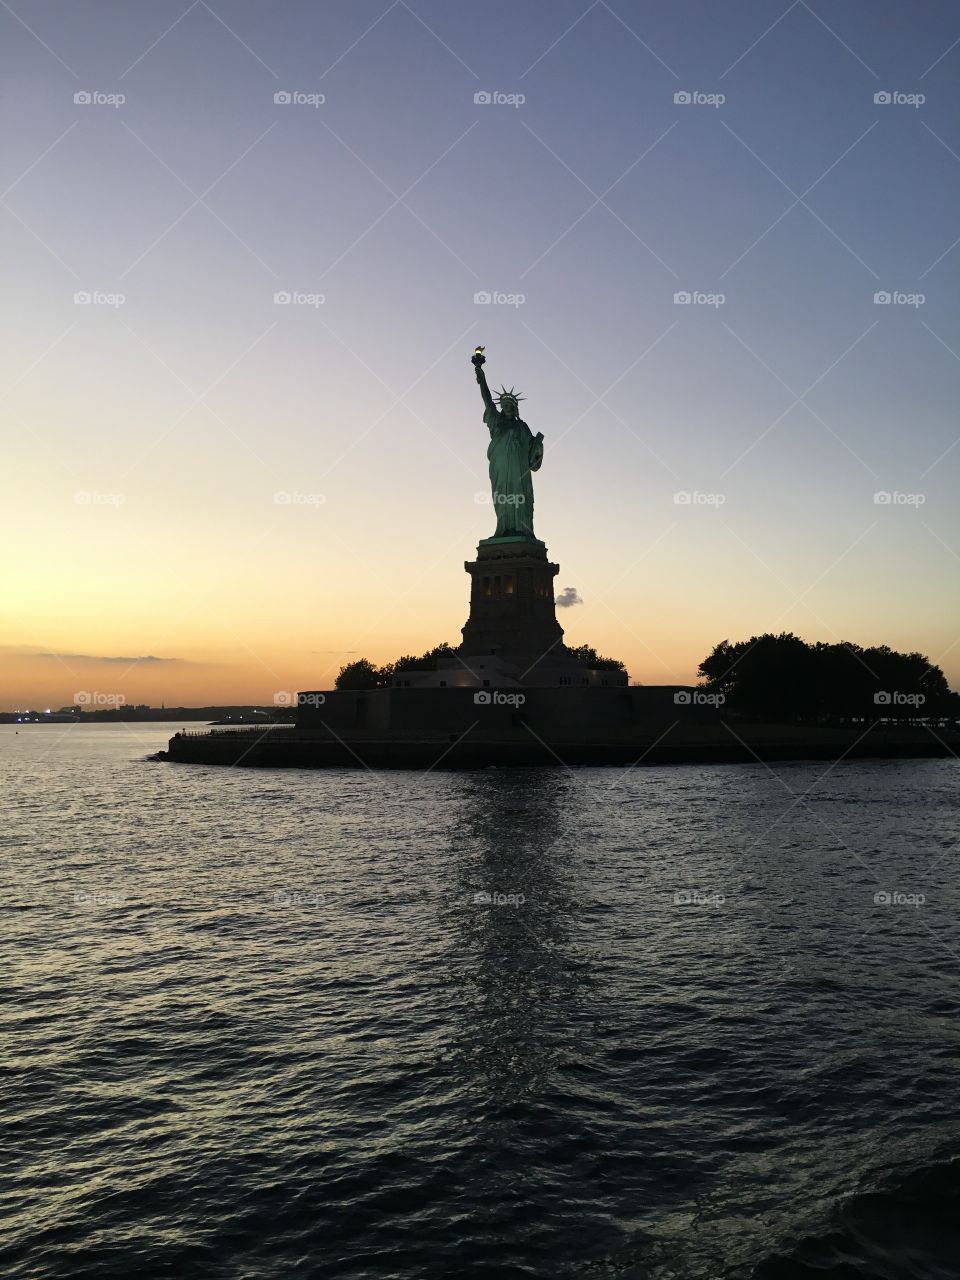 Lady Liberty 
New York, NY